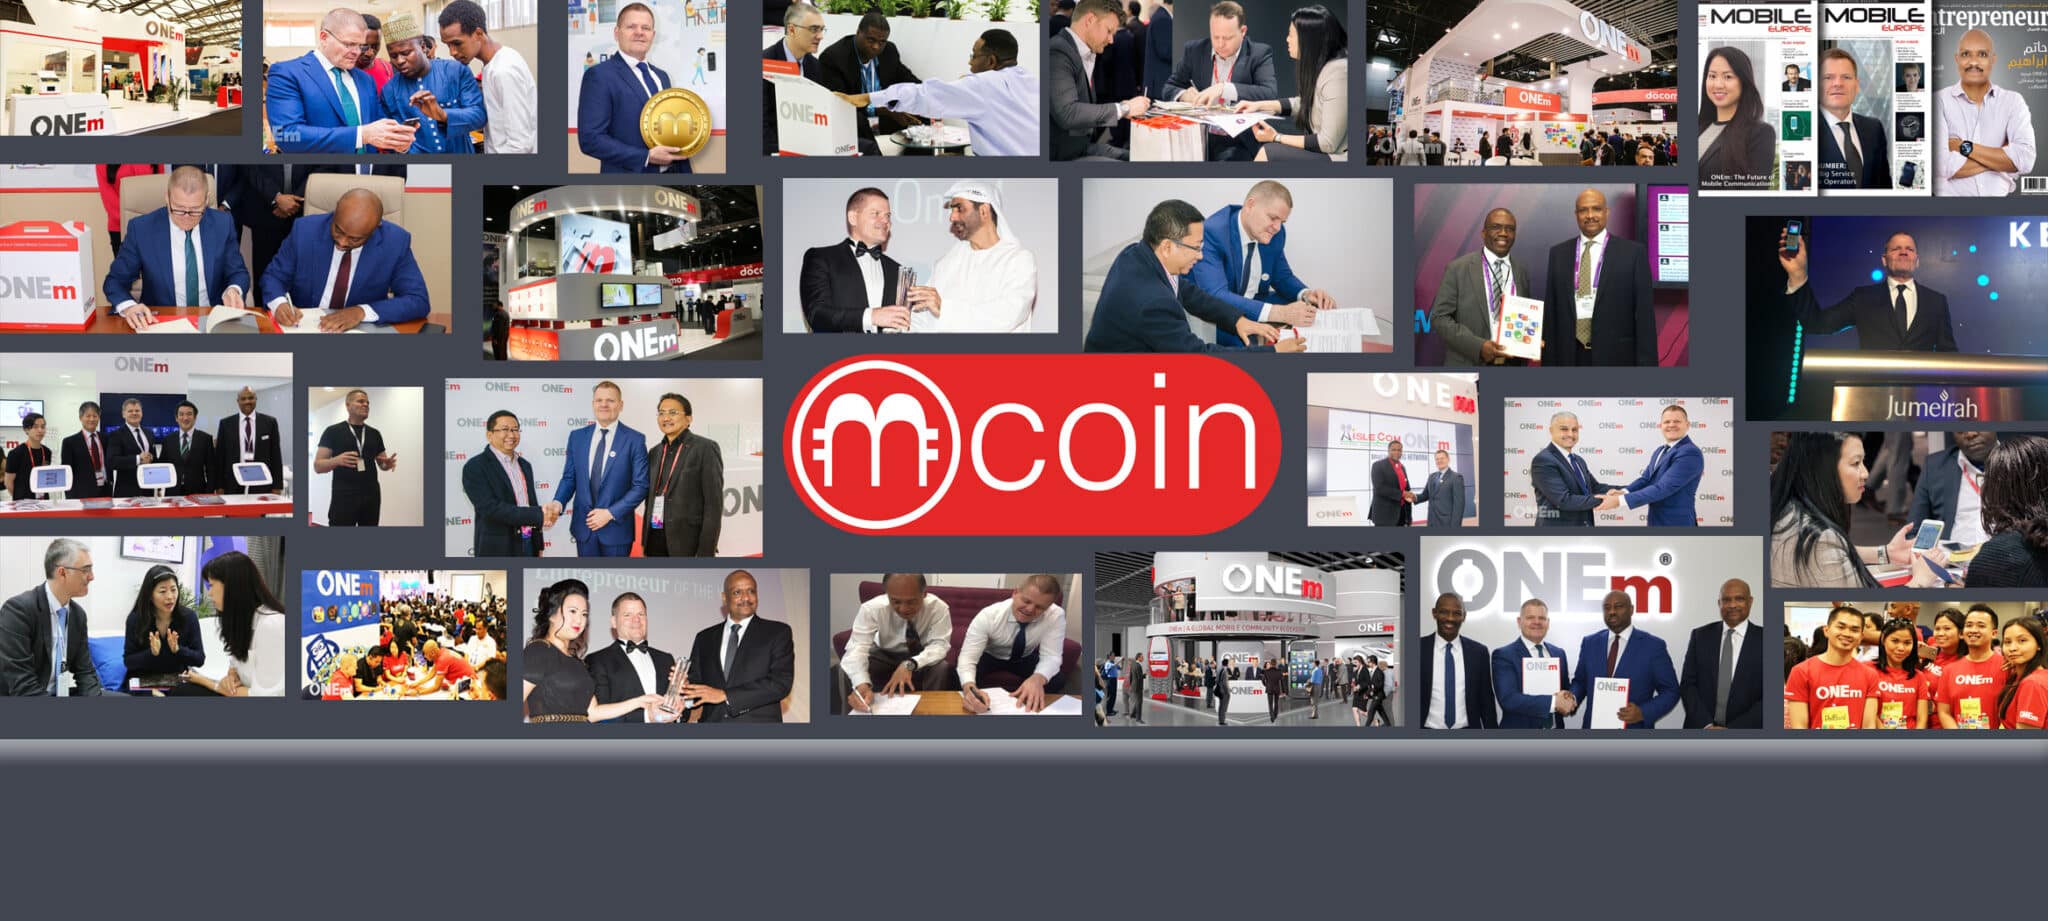 إبراهيم: الاكتتاب في الطرح الأولي لـ mCoin فرصة استثمارية قد لا تتكرر!